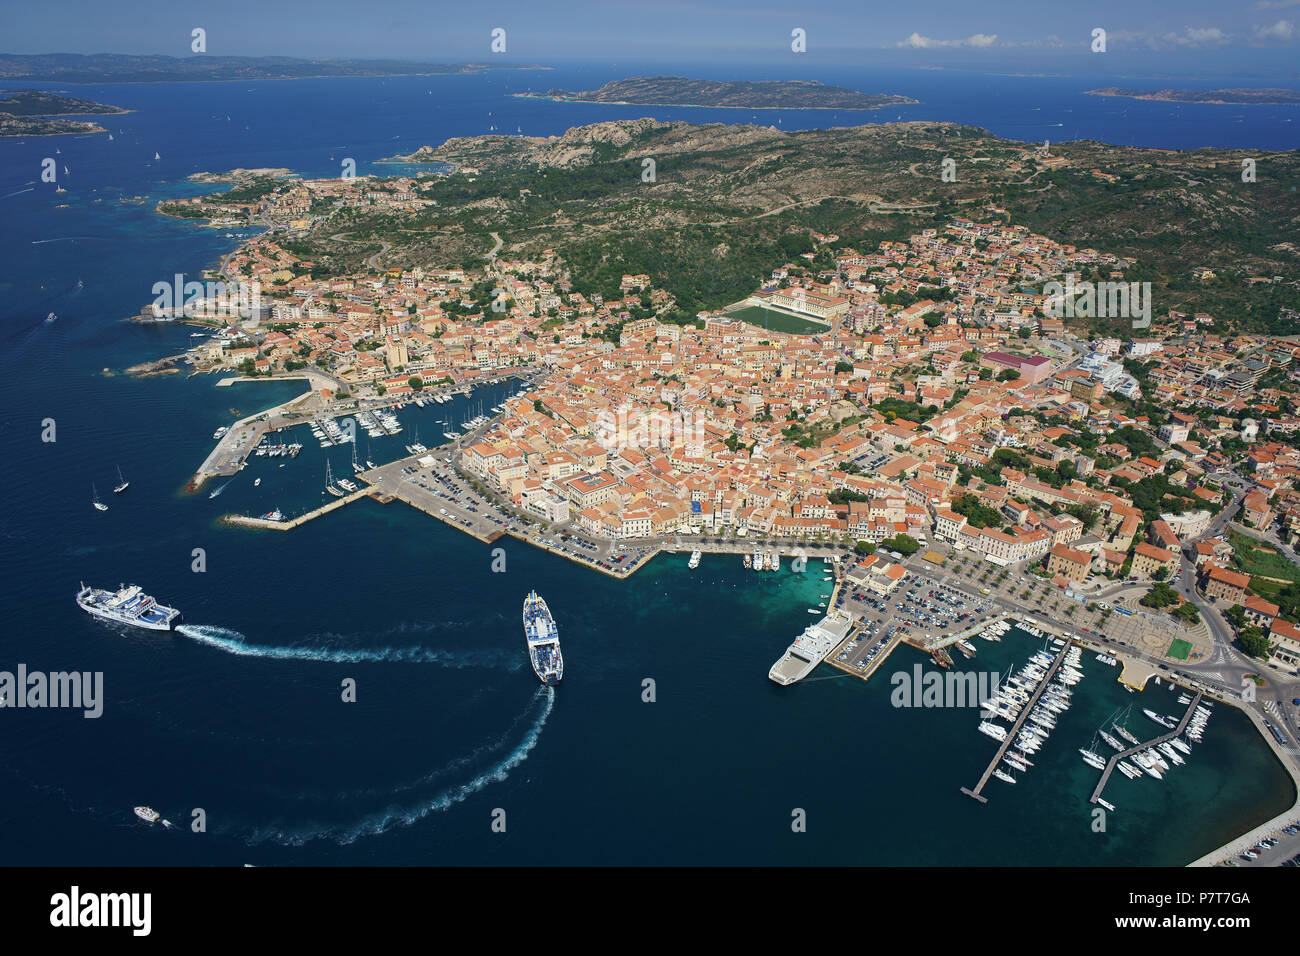 LUFTAUFNAHME. Stadt La Maddalena auf der Insel Maddalena mit Autofähren, die mit dem Festland verbunden sind. Provinz Sassari, Sardinien, Italien. Stockfoto